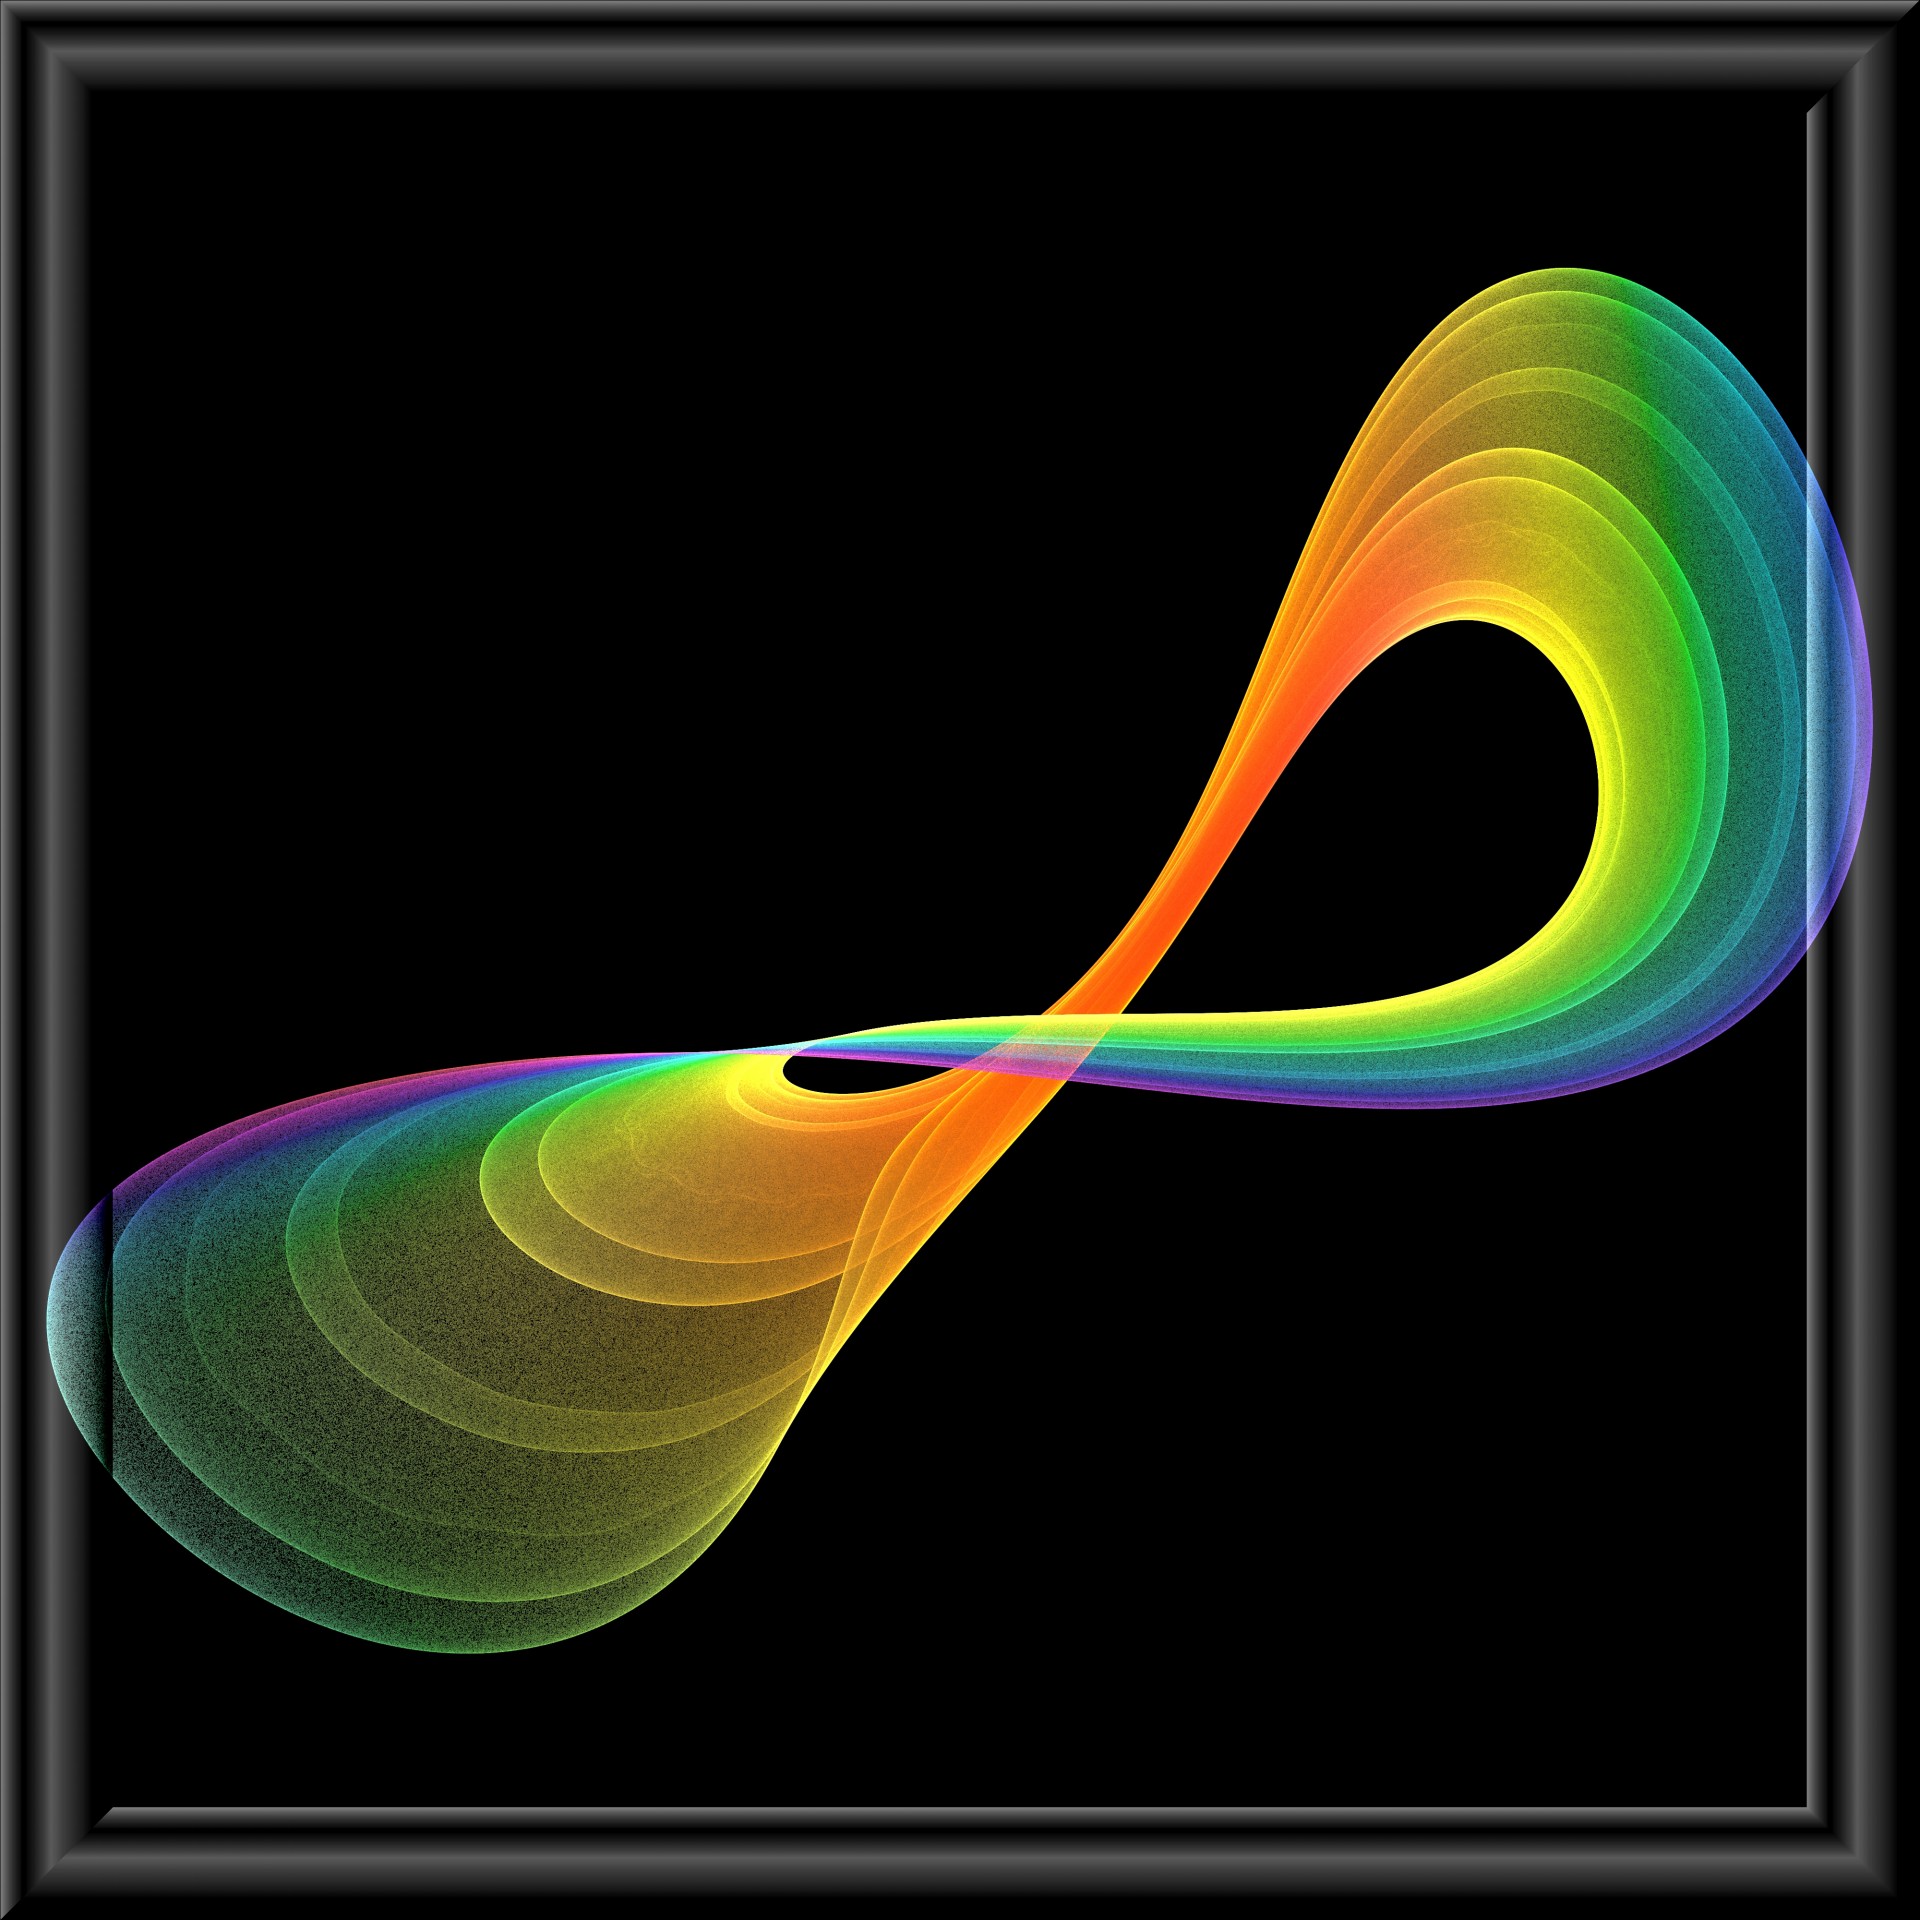 Resultado de imagen para symbol infinity fractal